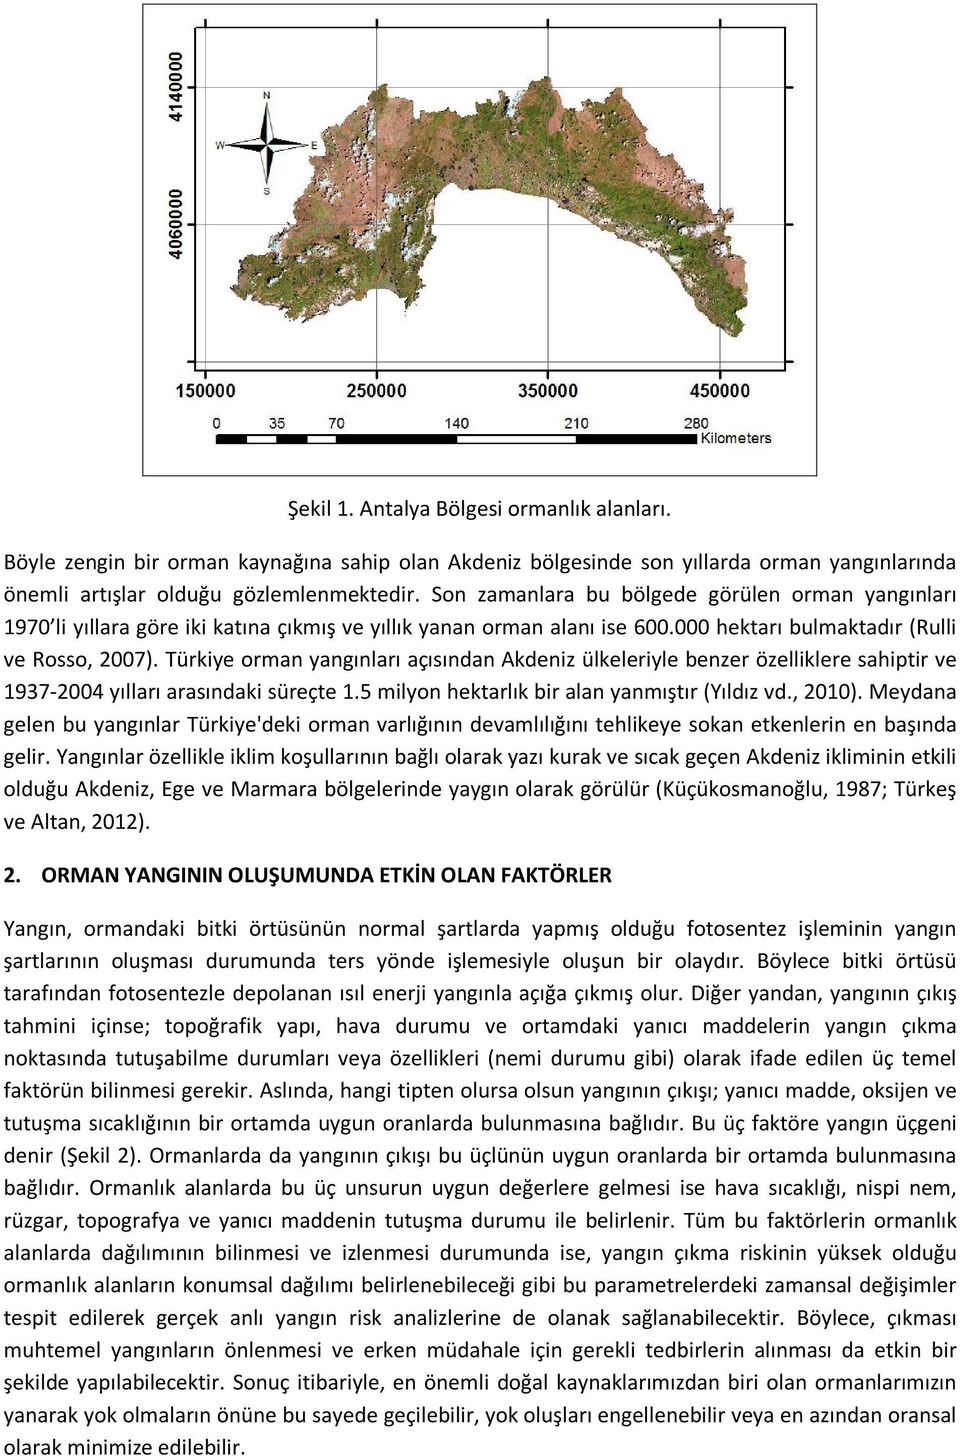 Türkiye orman yangınları açısından Akdeniz ülkeleriyle benzer özelliklere sahiptir ve 1937 2004 yılları arasındaki süreçte 1.5 milyon hektarlık bir alan yanmıştır (Yıldız vd., 2010).